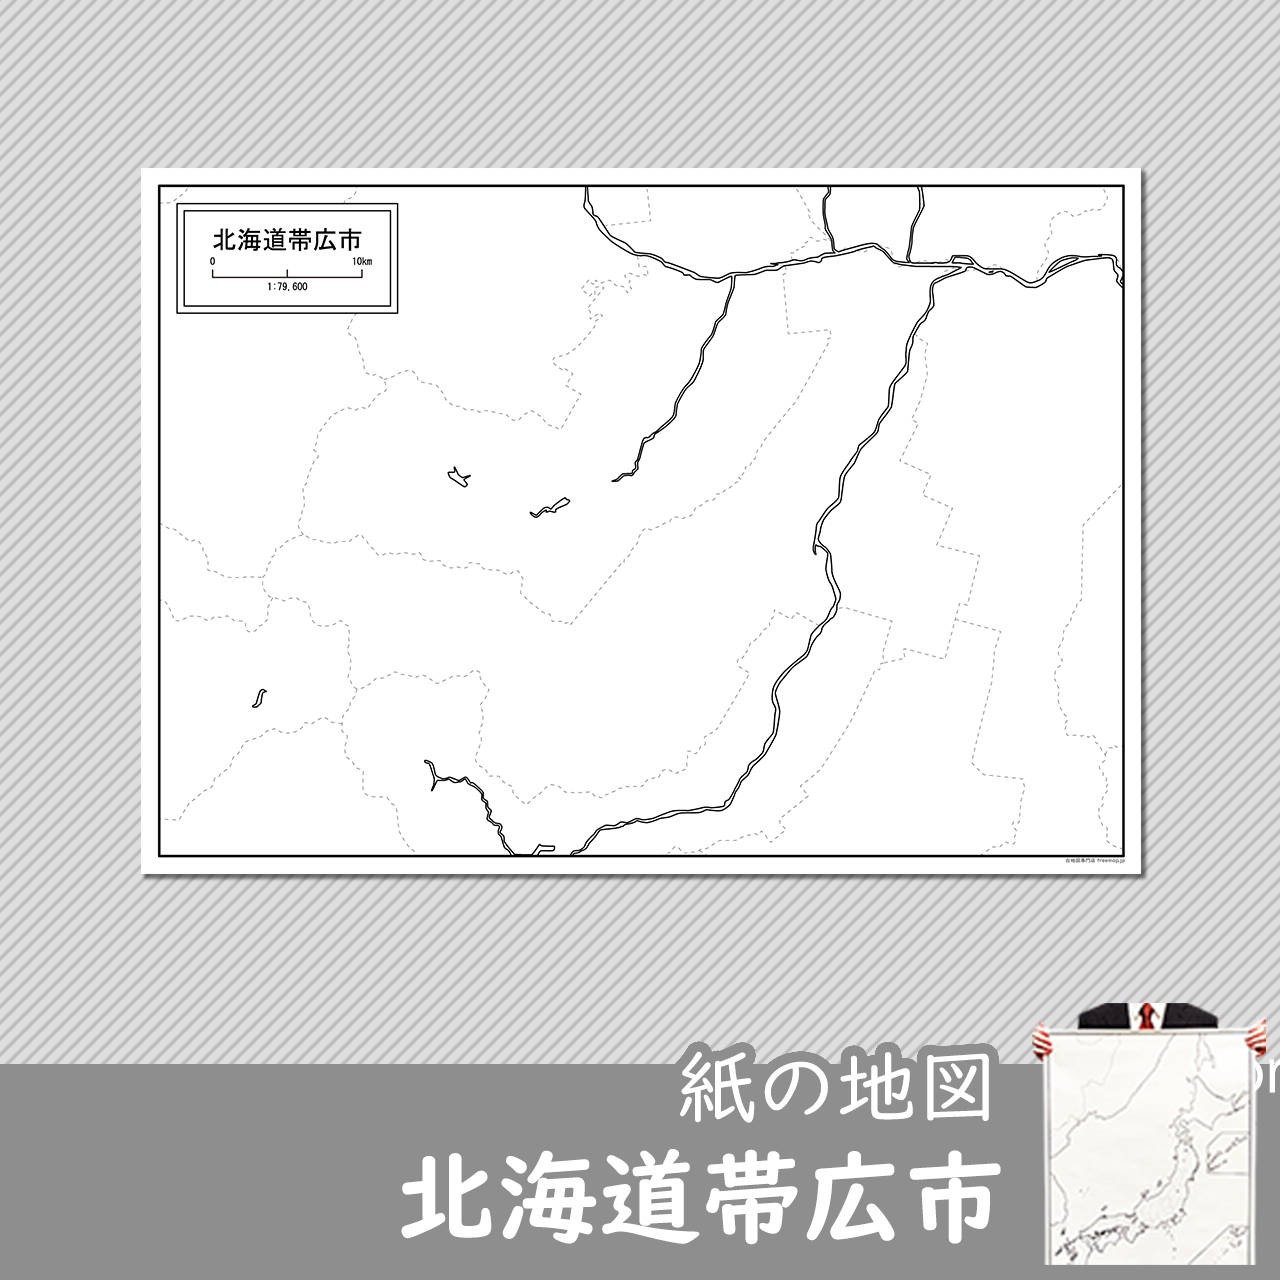 帯広市の紙の白地図のサムネイル